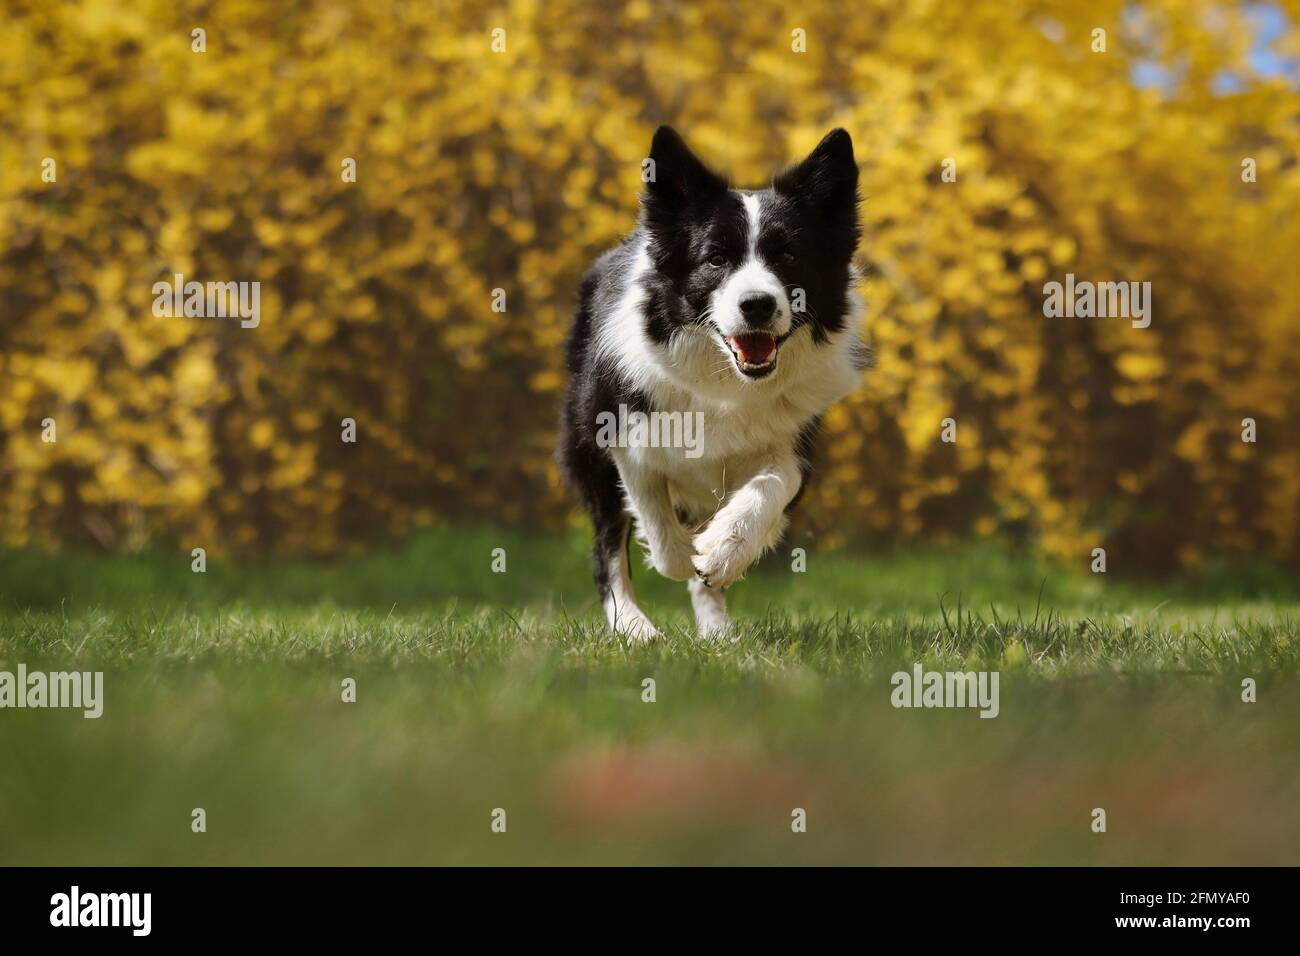 Happy Border Collie corre en el parque durante la primavera. Adorable perro blanco y negro que está activo con fondo florecido amarillo. Foto de stock